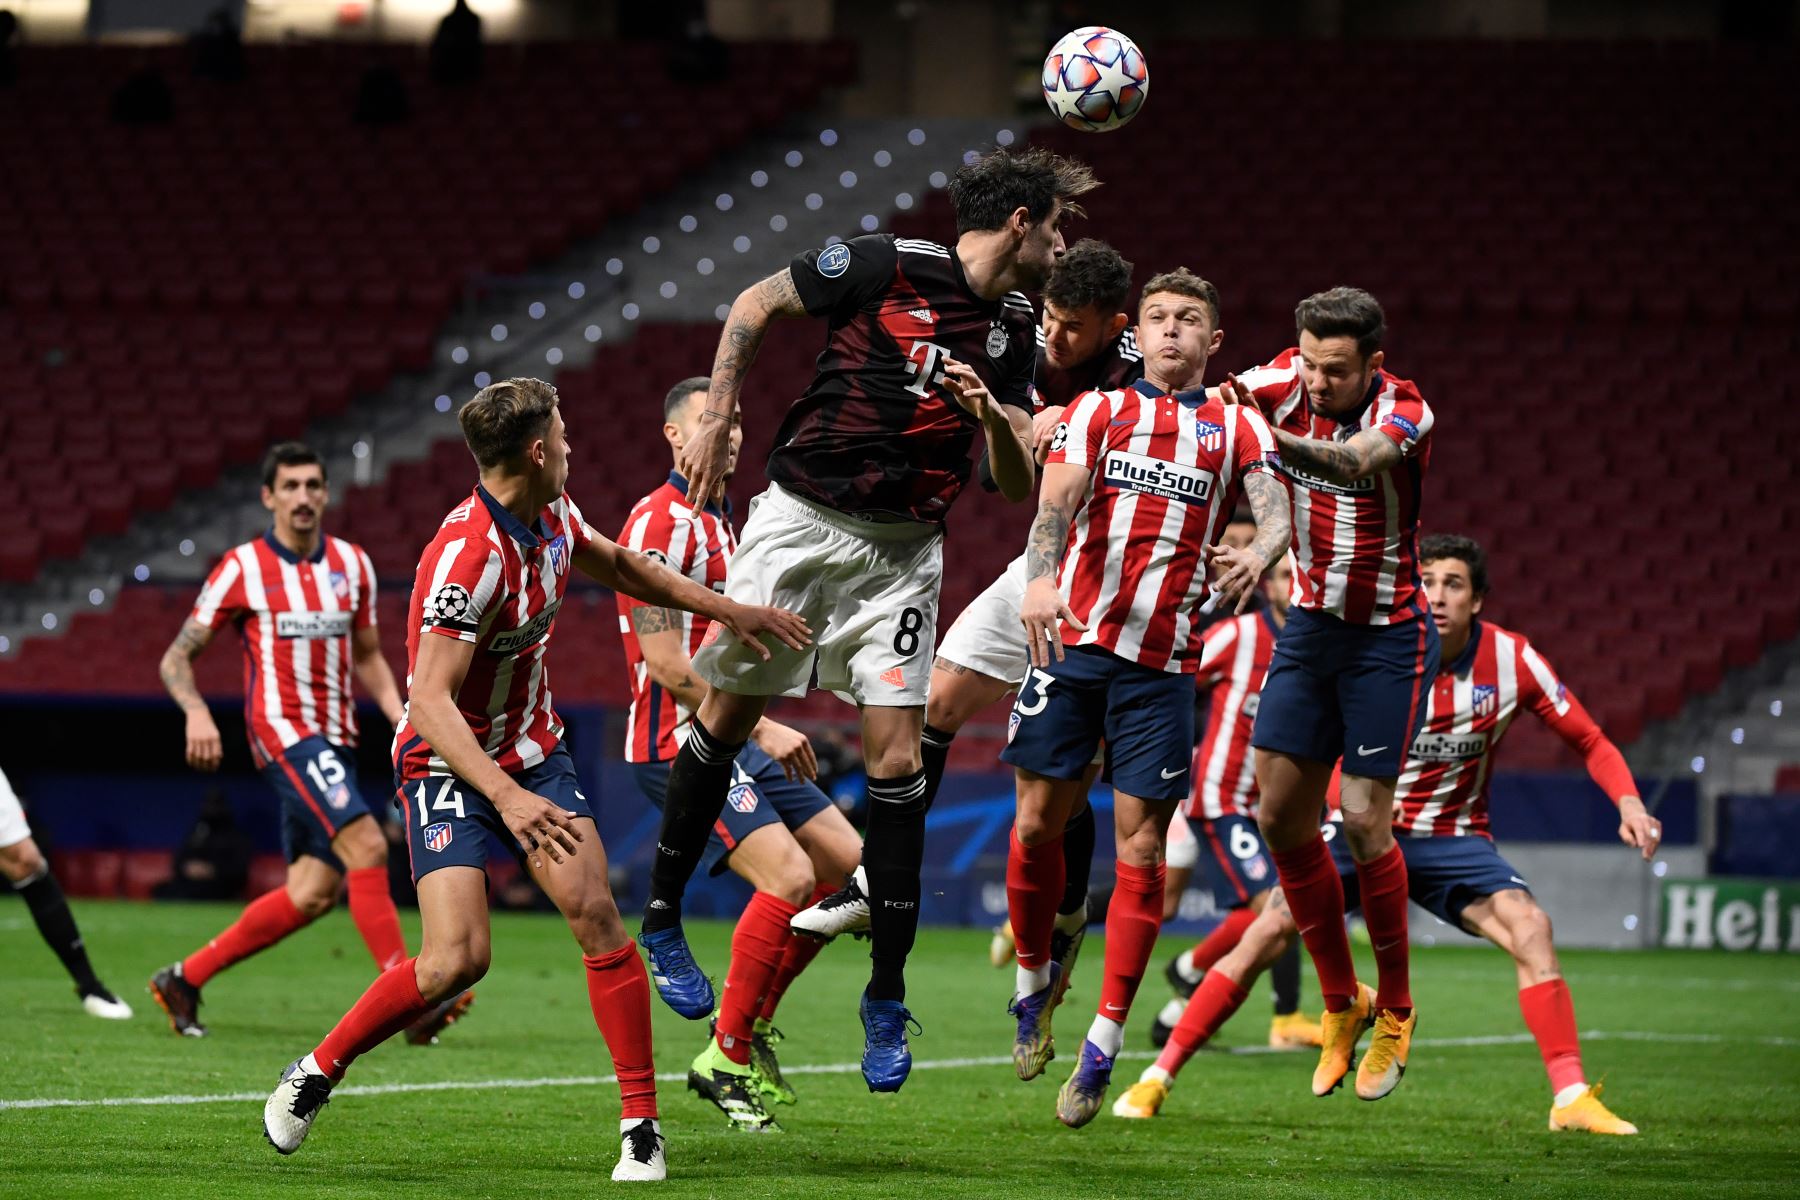 Los jugadores saltan por el balón durante el partido de fútbol del grupo A de la Liga de Campeones de la UEFA. Foto: AFP